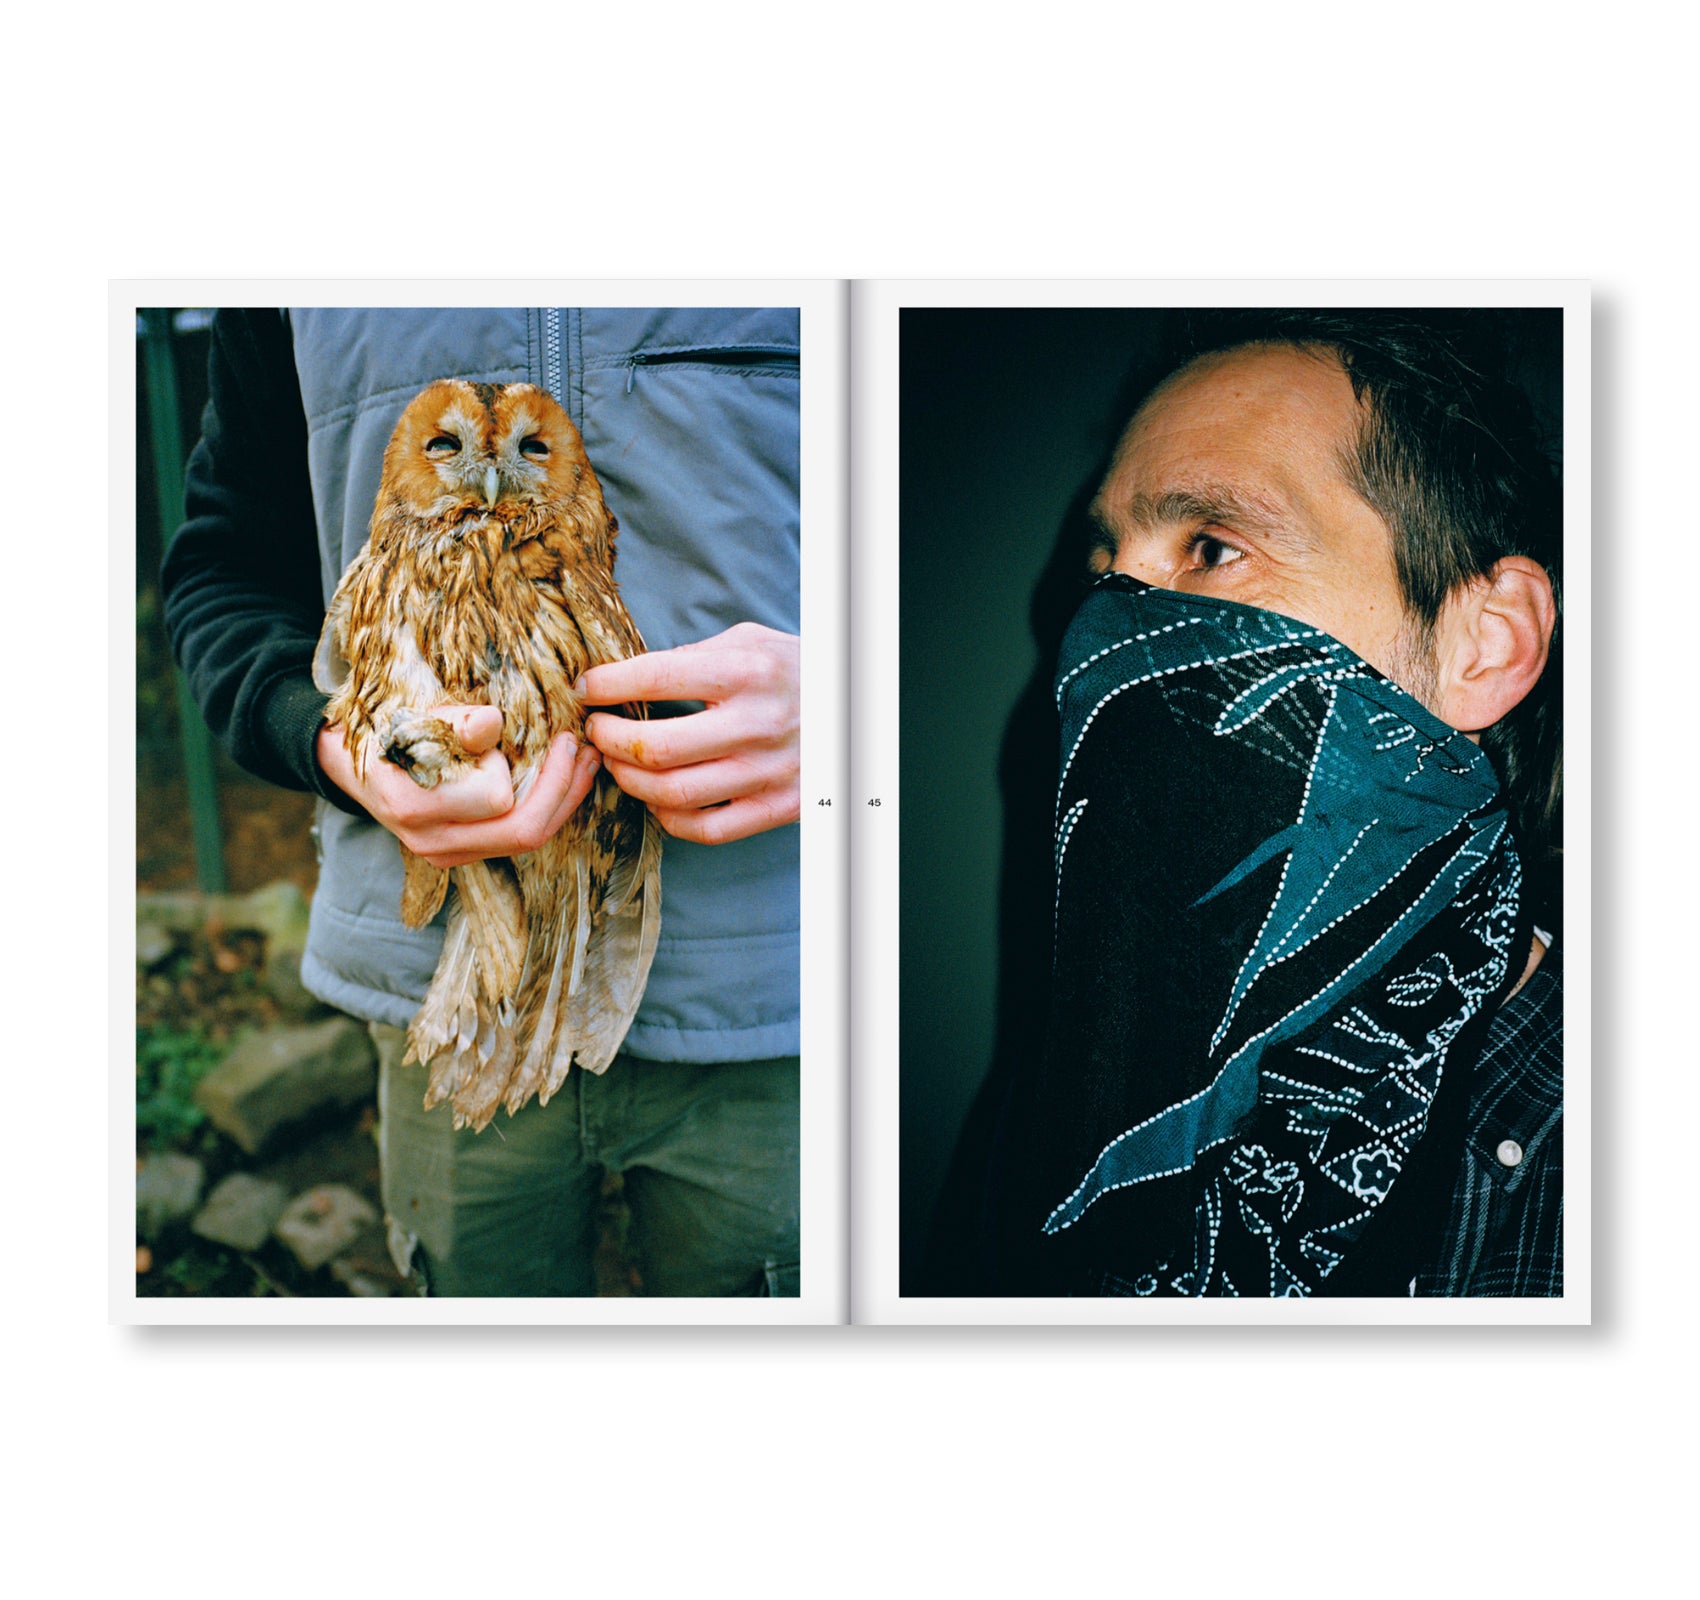 BIRDS OF A FEATHER by OpStap, Vincen Beeckman, Colin Pantall, Lien Van Leemput